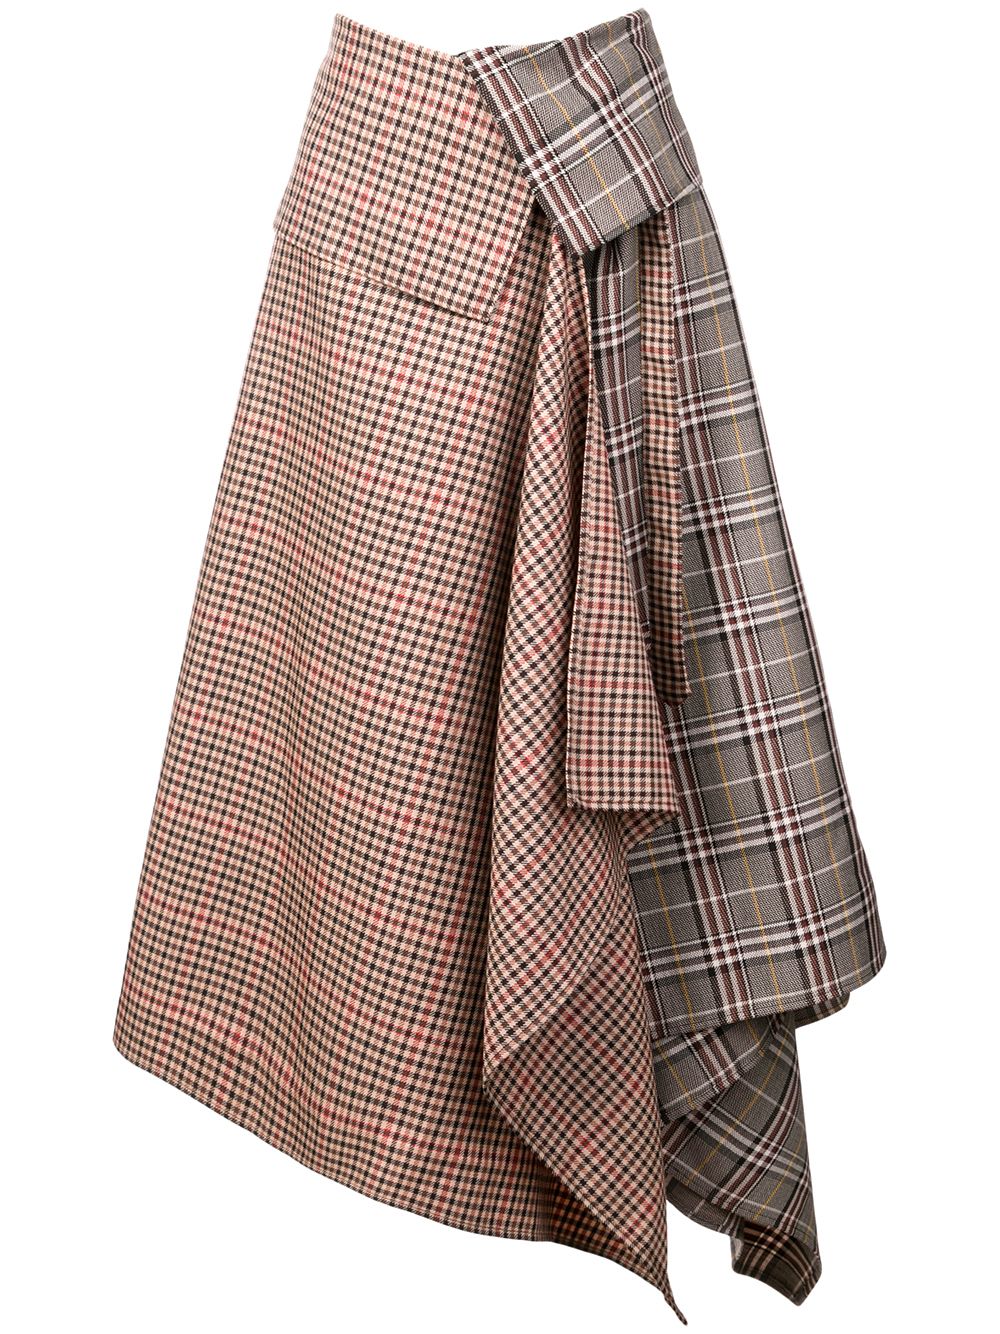 фото Monse асимметричная юбка со складками в шотландскую клетку